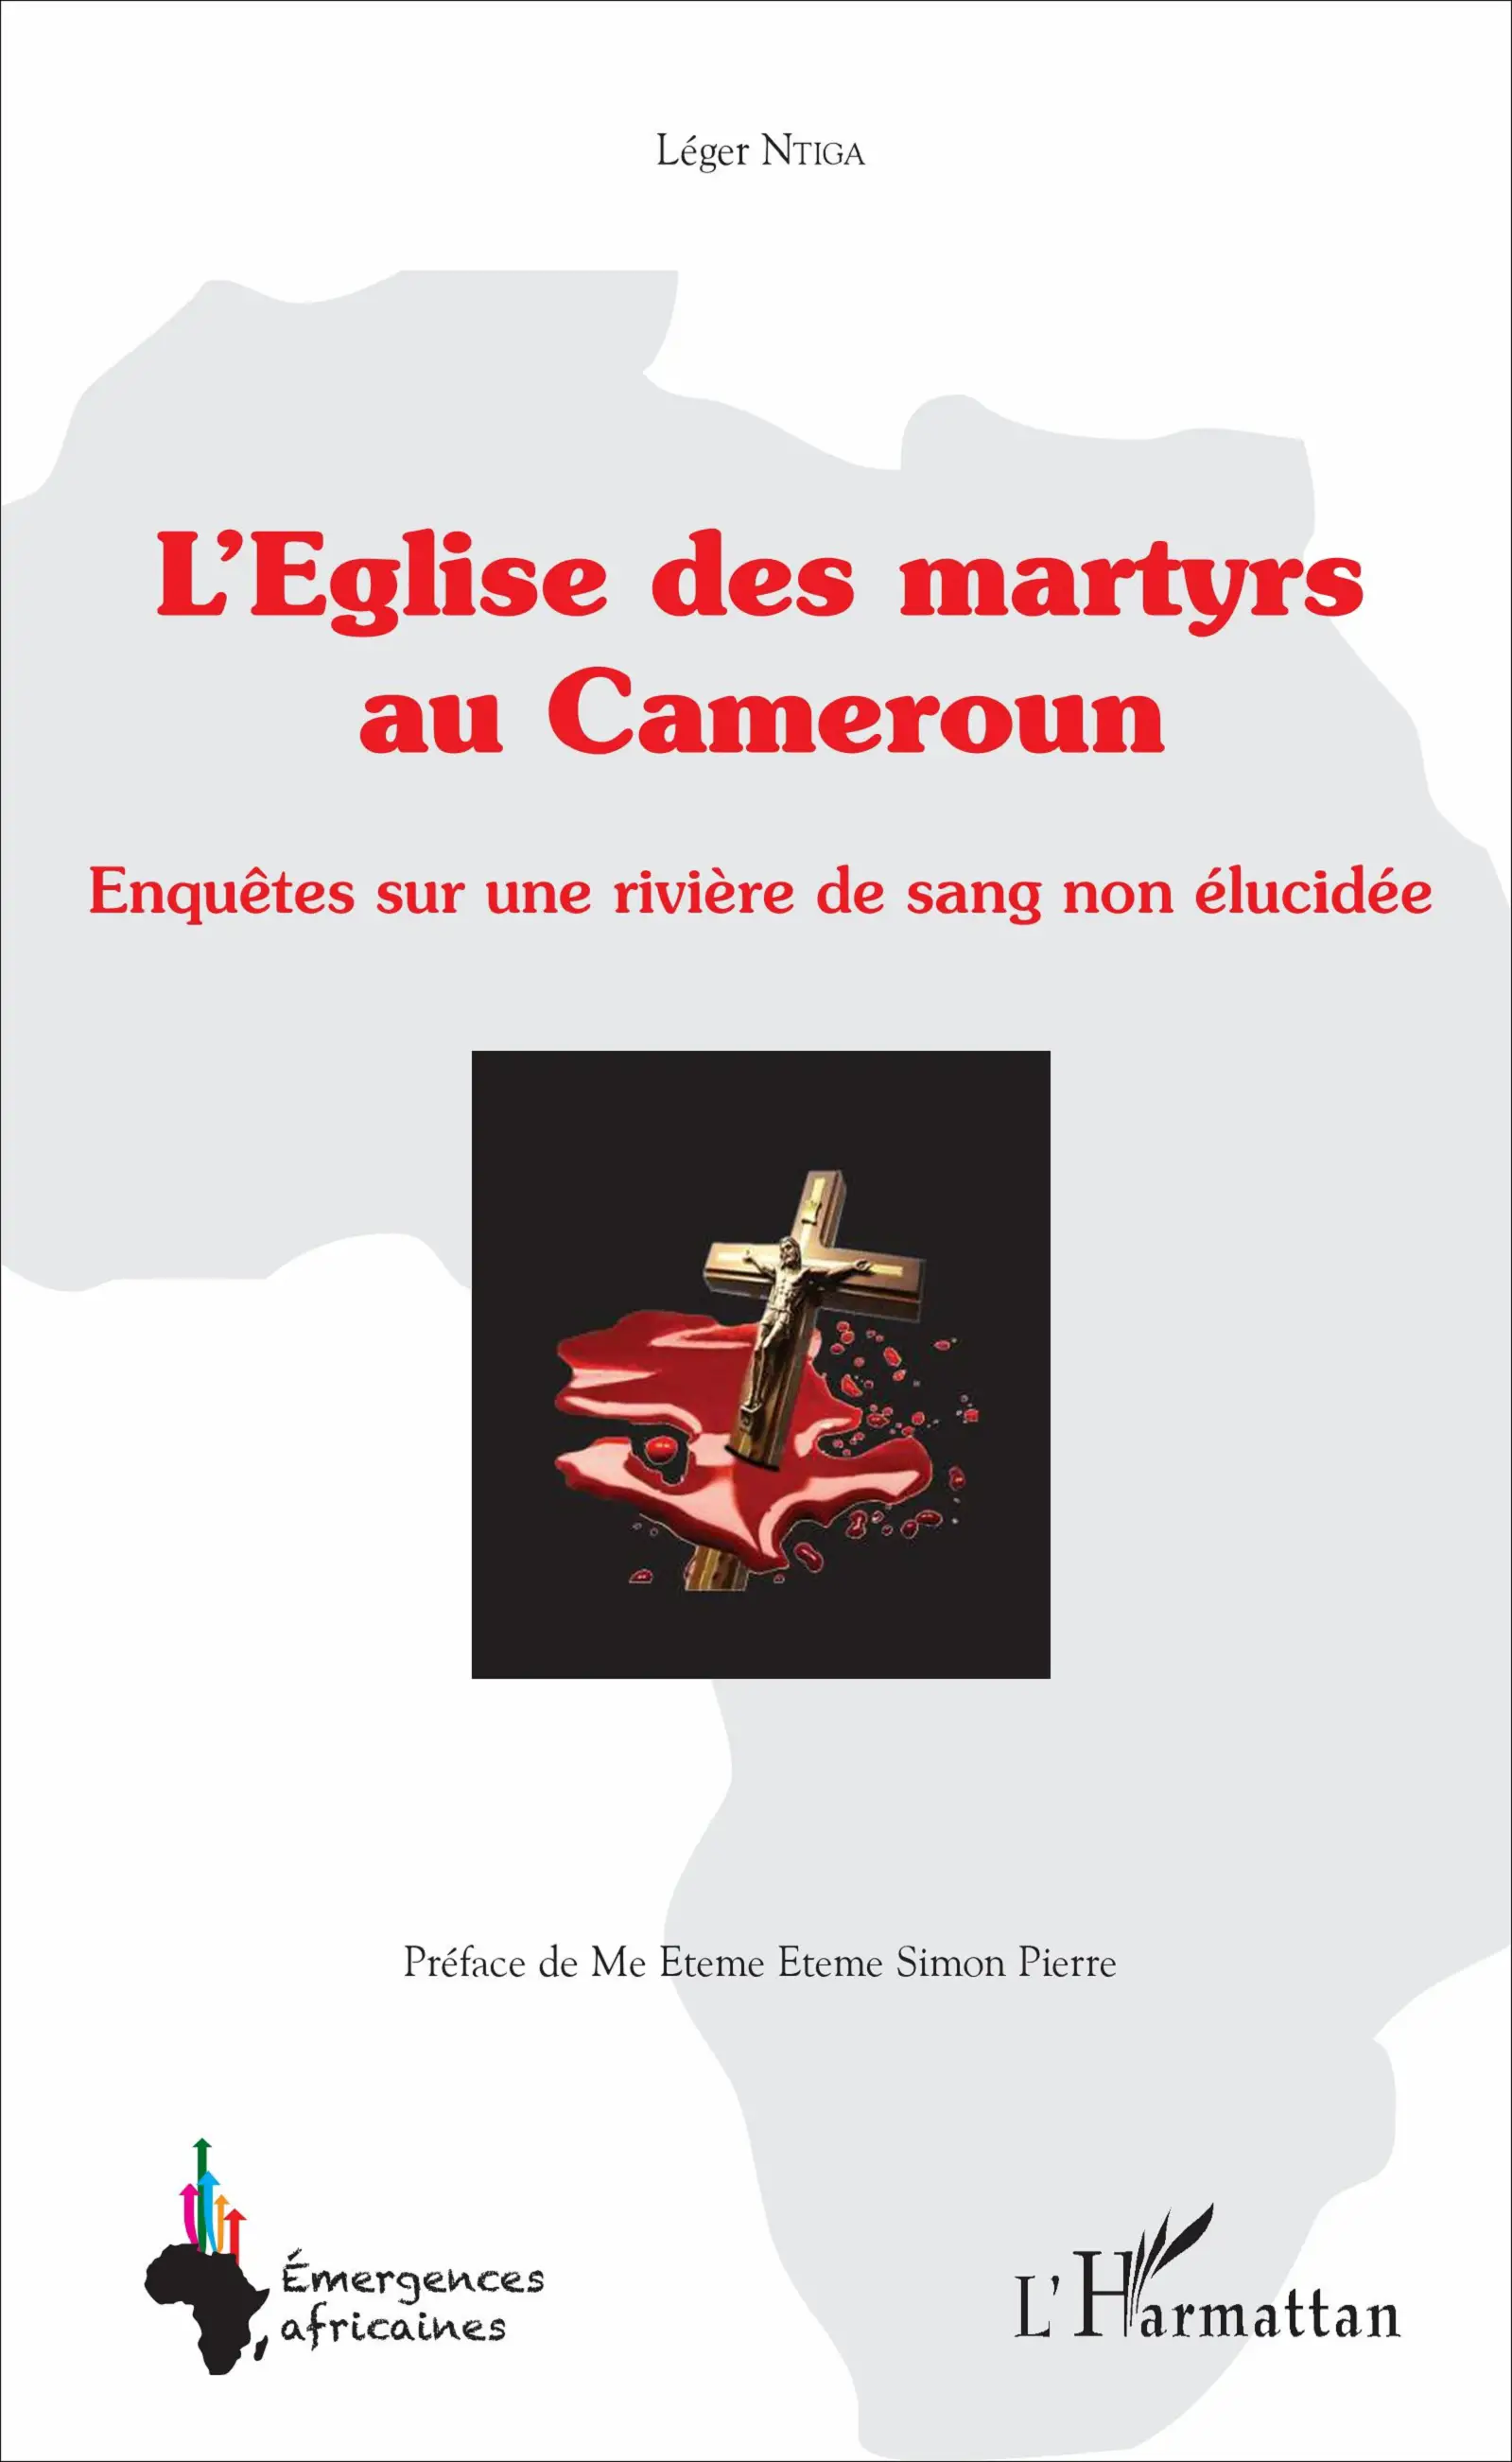 Cameroun: Sur les traces des martyrs de l’Eglise